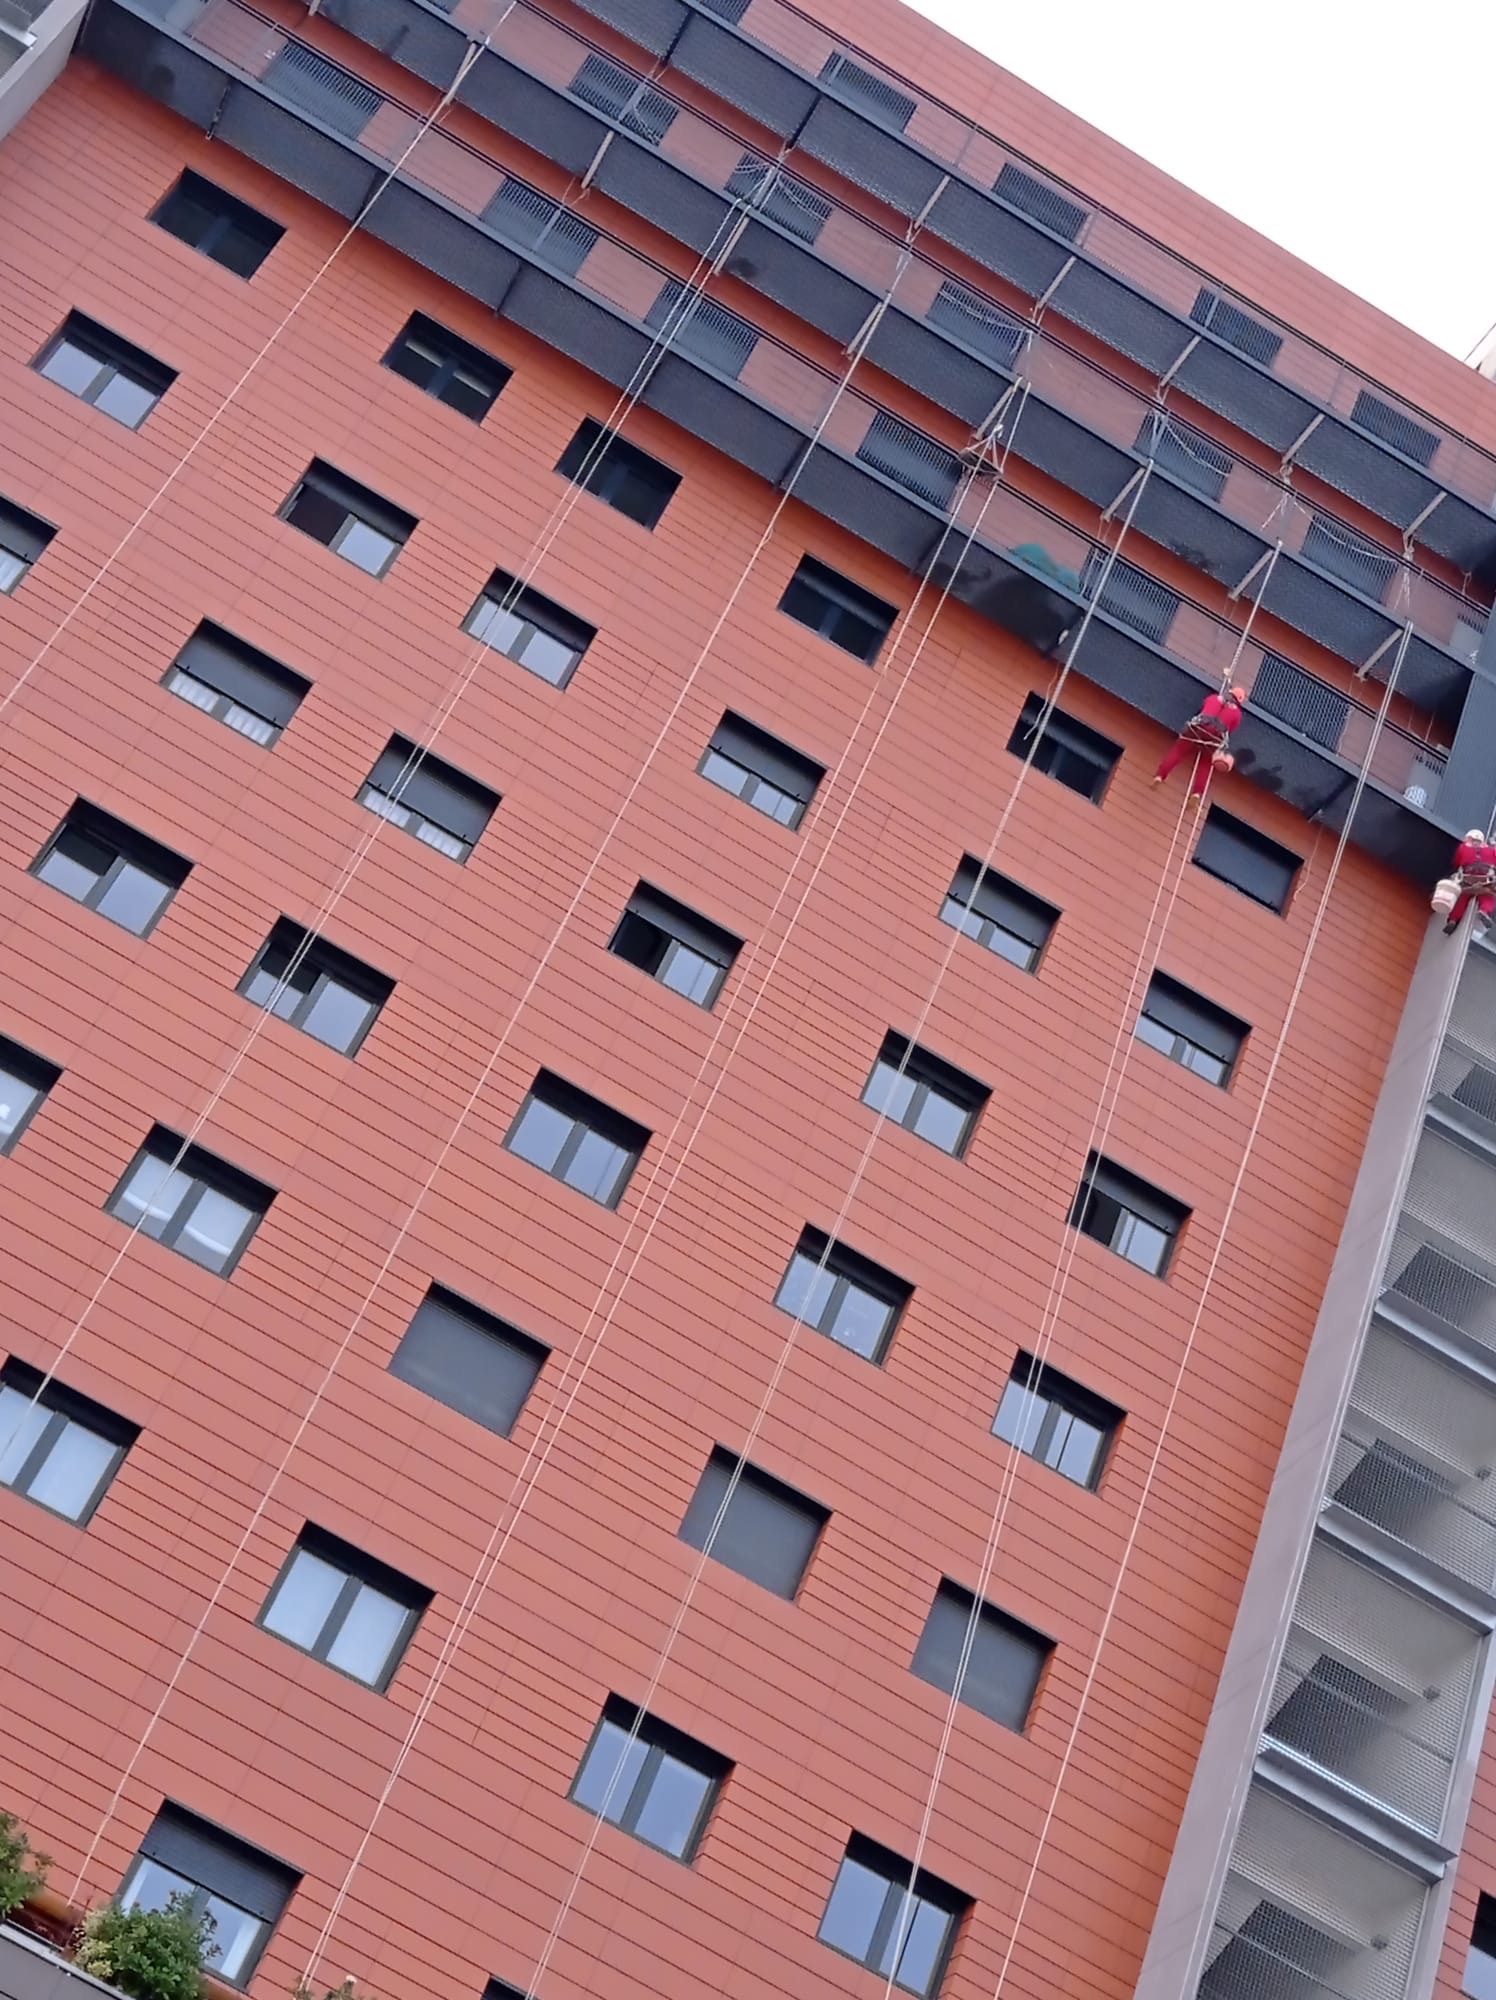 Operarios especializados en trabajos verticales descendiendo por la fachada de ladrillo naranja de un edificio residencial, utilizando técnicas de escalada y equipos de seguridad, en un día nublado con luz difusa, destacando el contraste de la arquitectura urbana moderna.